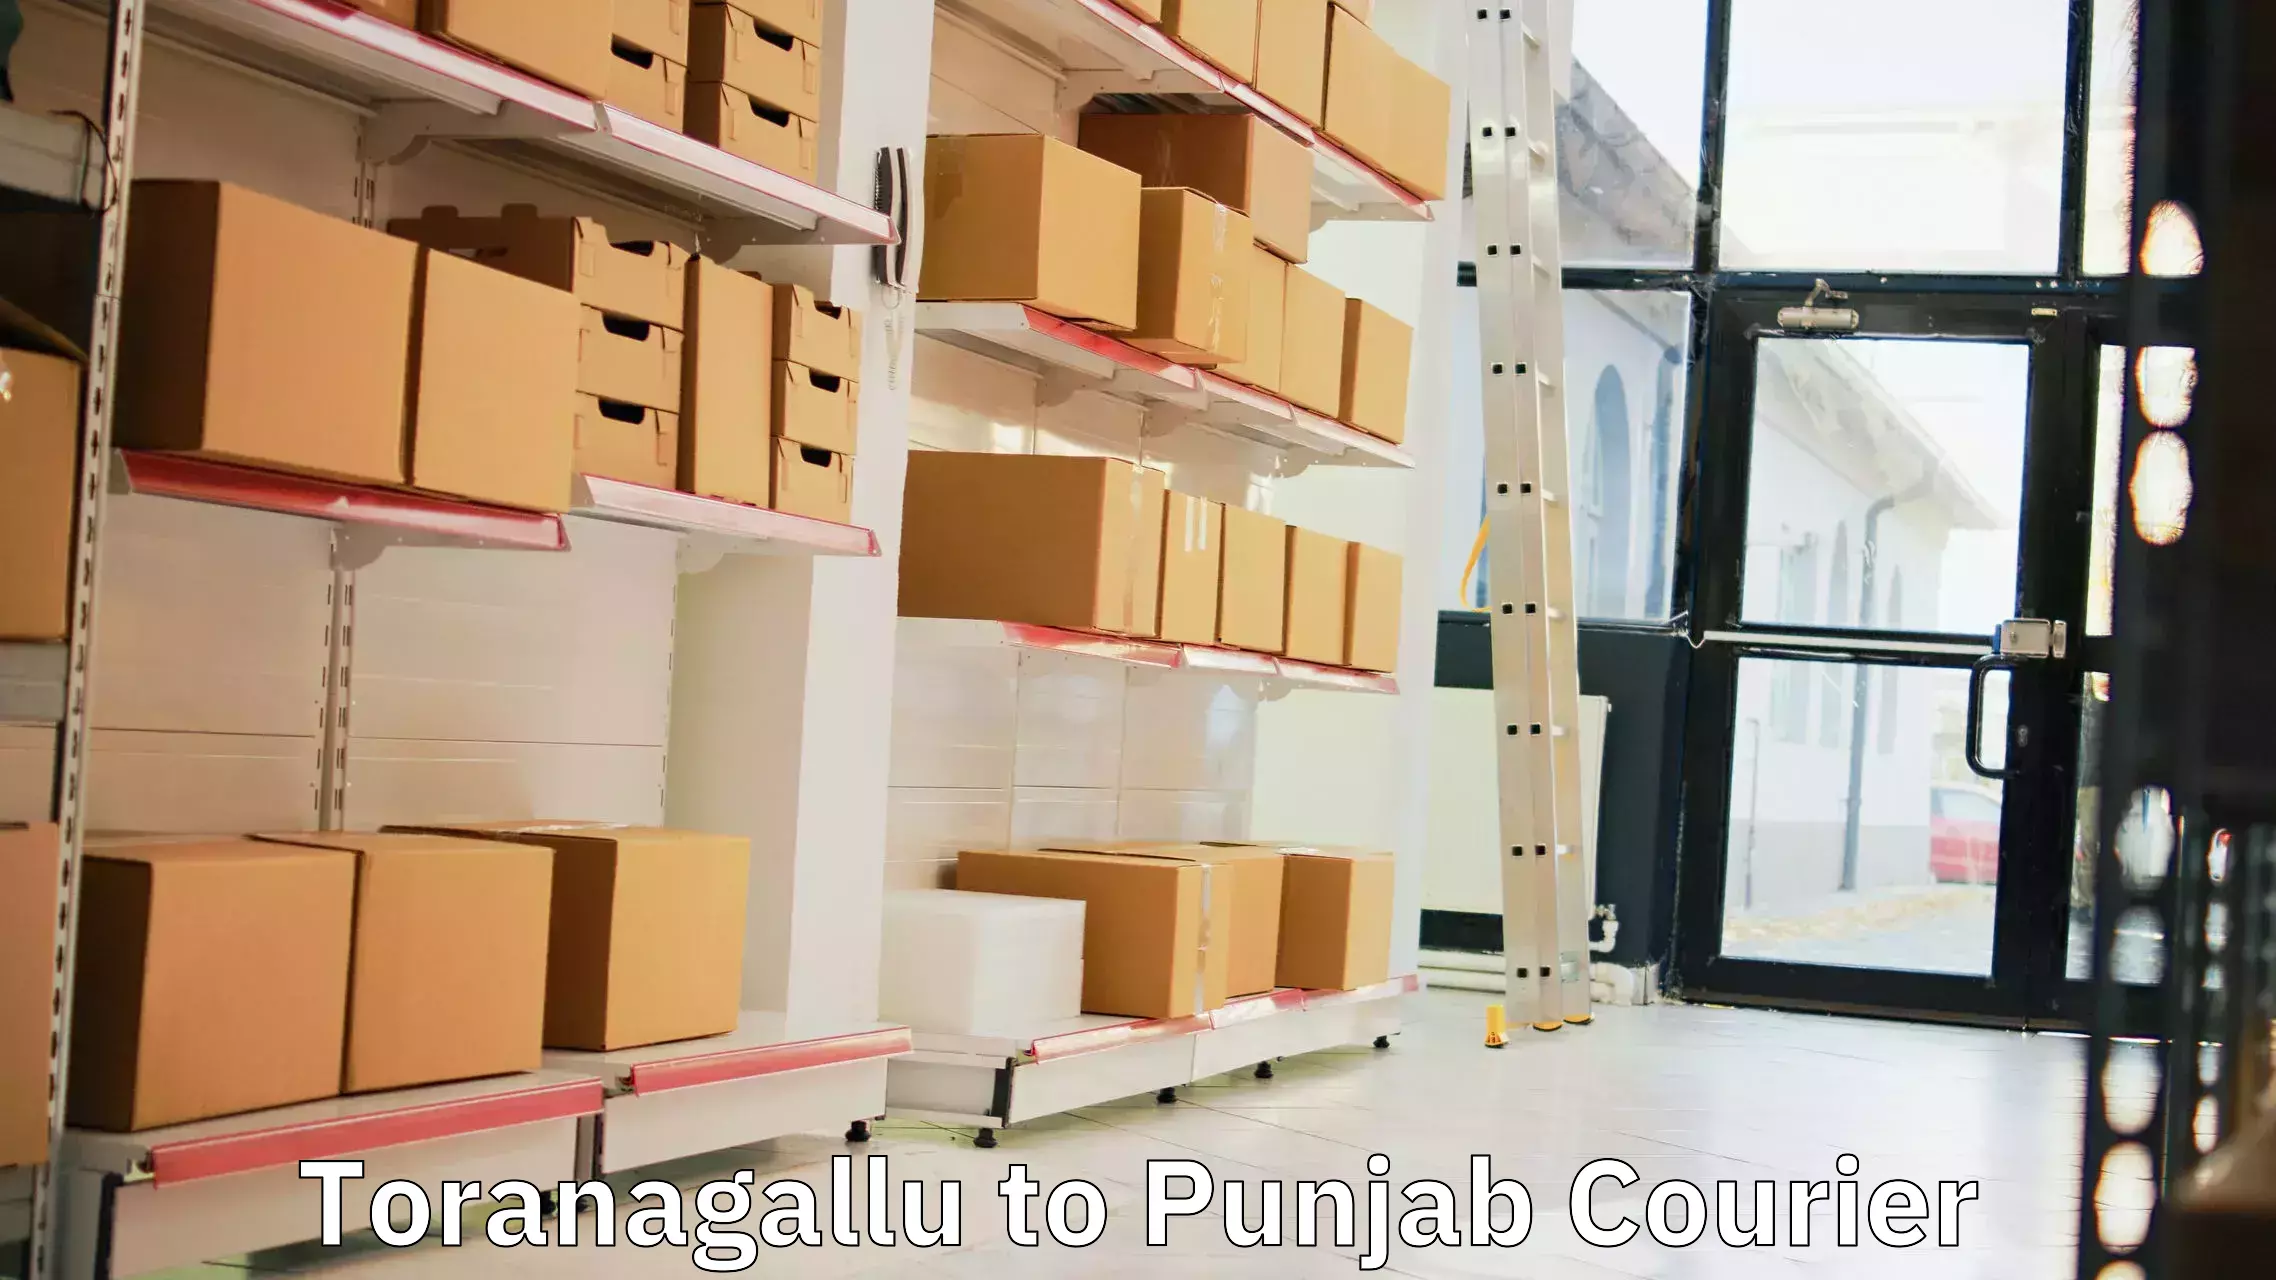 Express logistics providers Toranagallu to Punjab